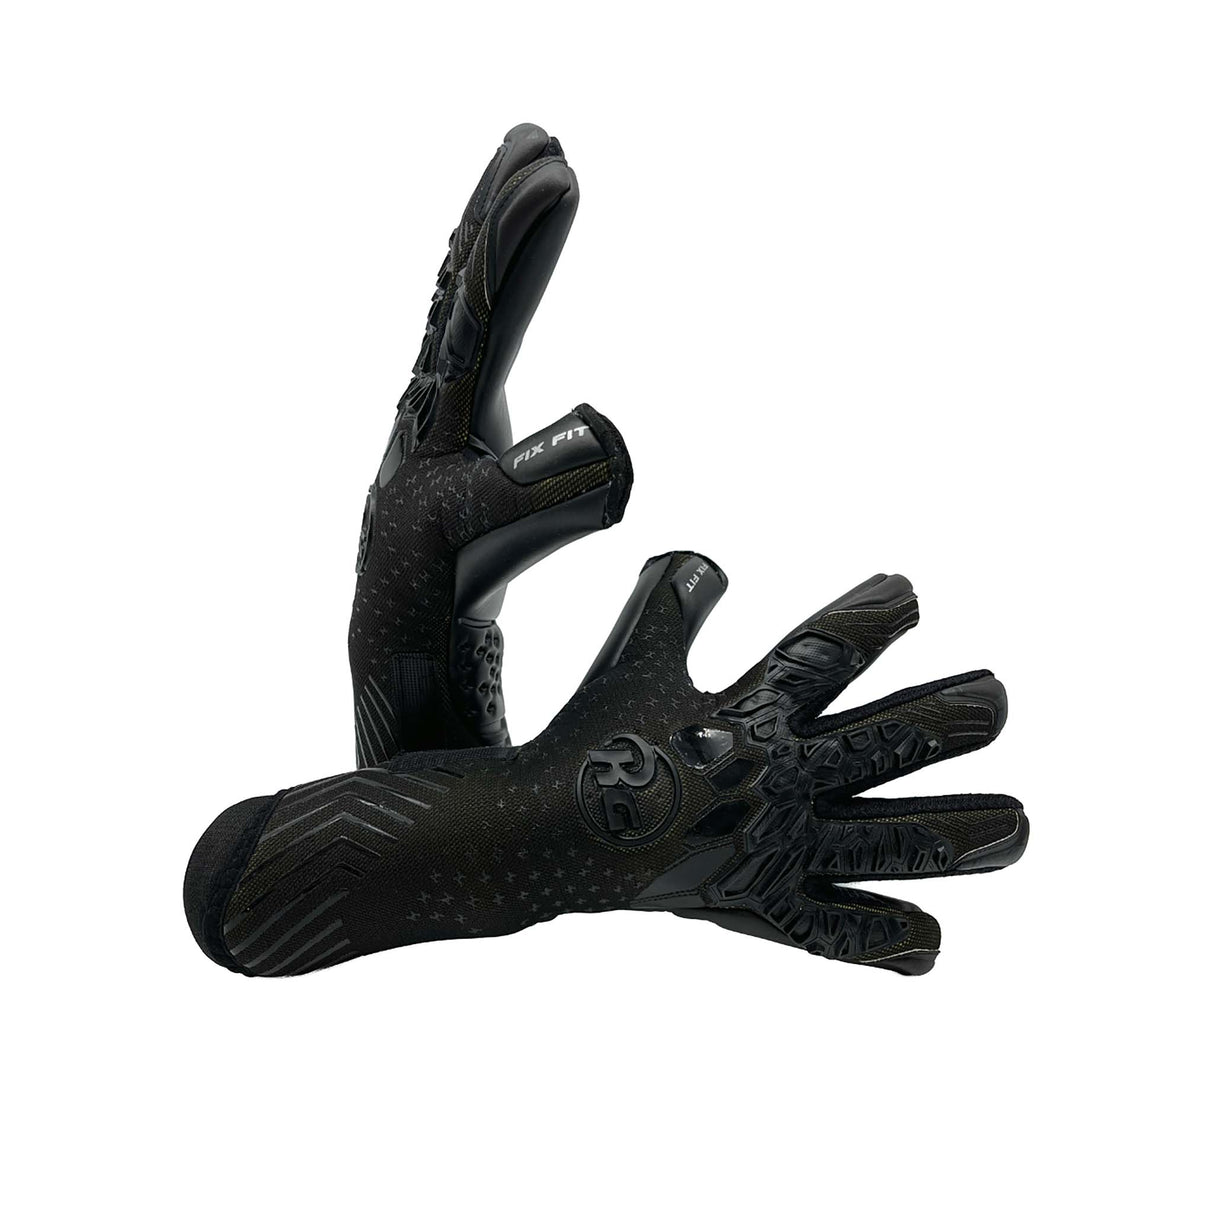 RG Goalkeeper Gloves Aversa gants de gardien de but de soccer noir lateral